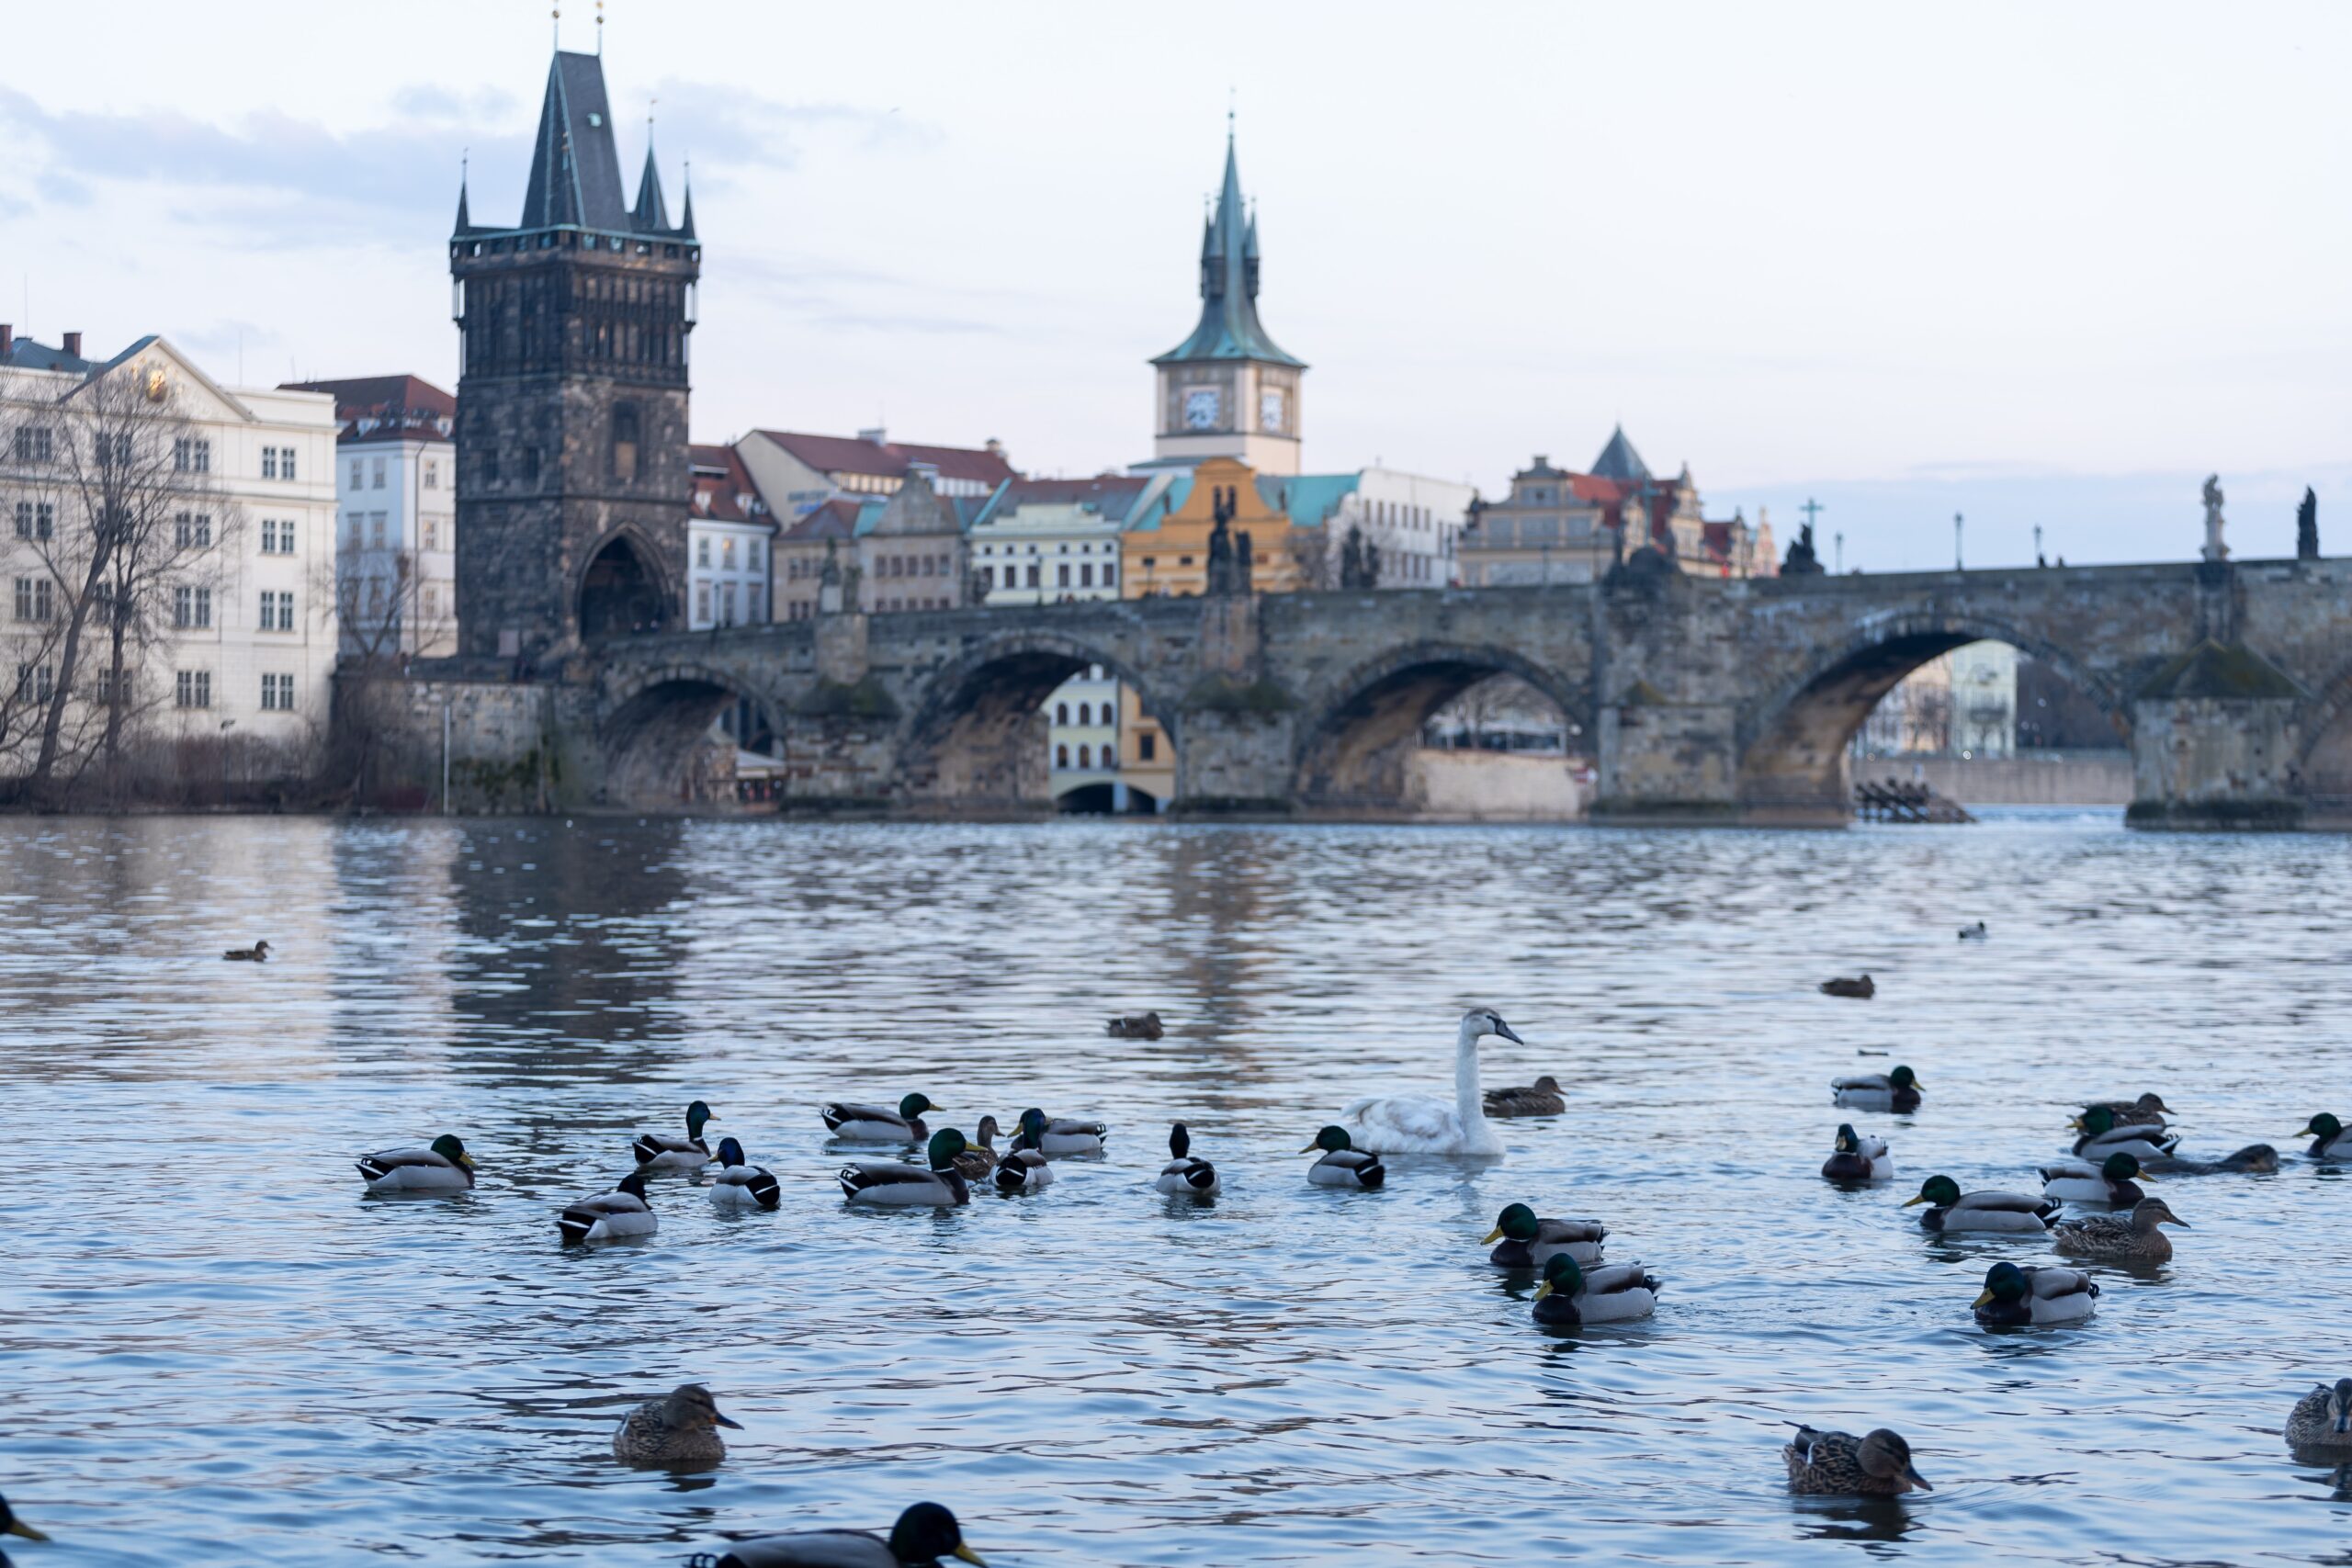 Praga nel corso dei secoli: Un affascinante viaggio attraverso la sua evoluzione storica e culturale